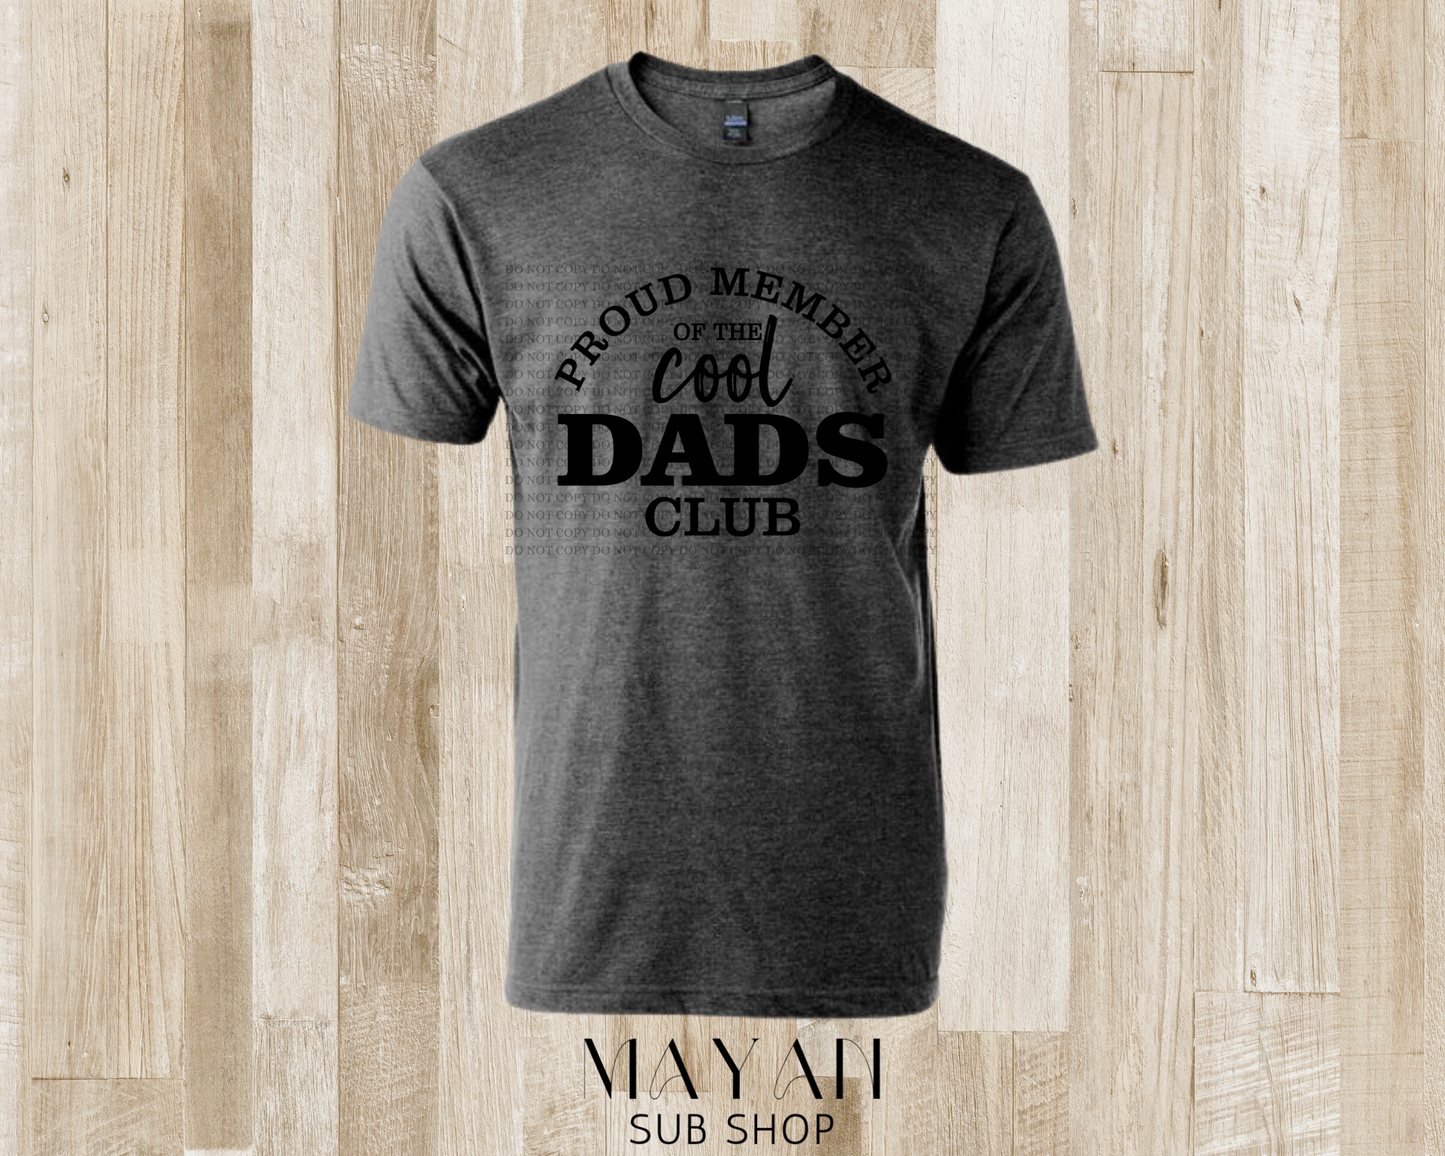 Cool dads club shirt - Mayan Sub Shop